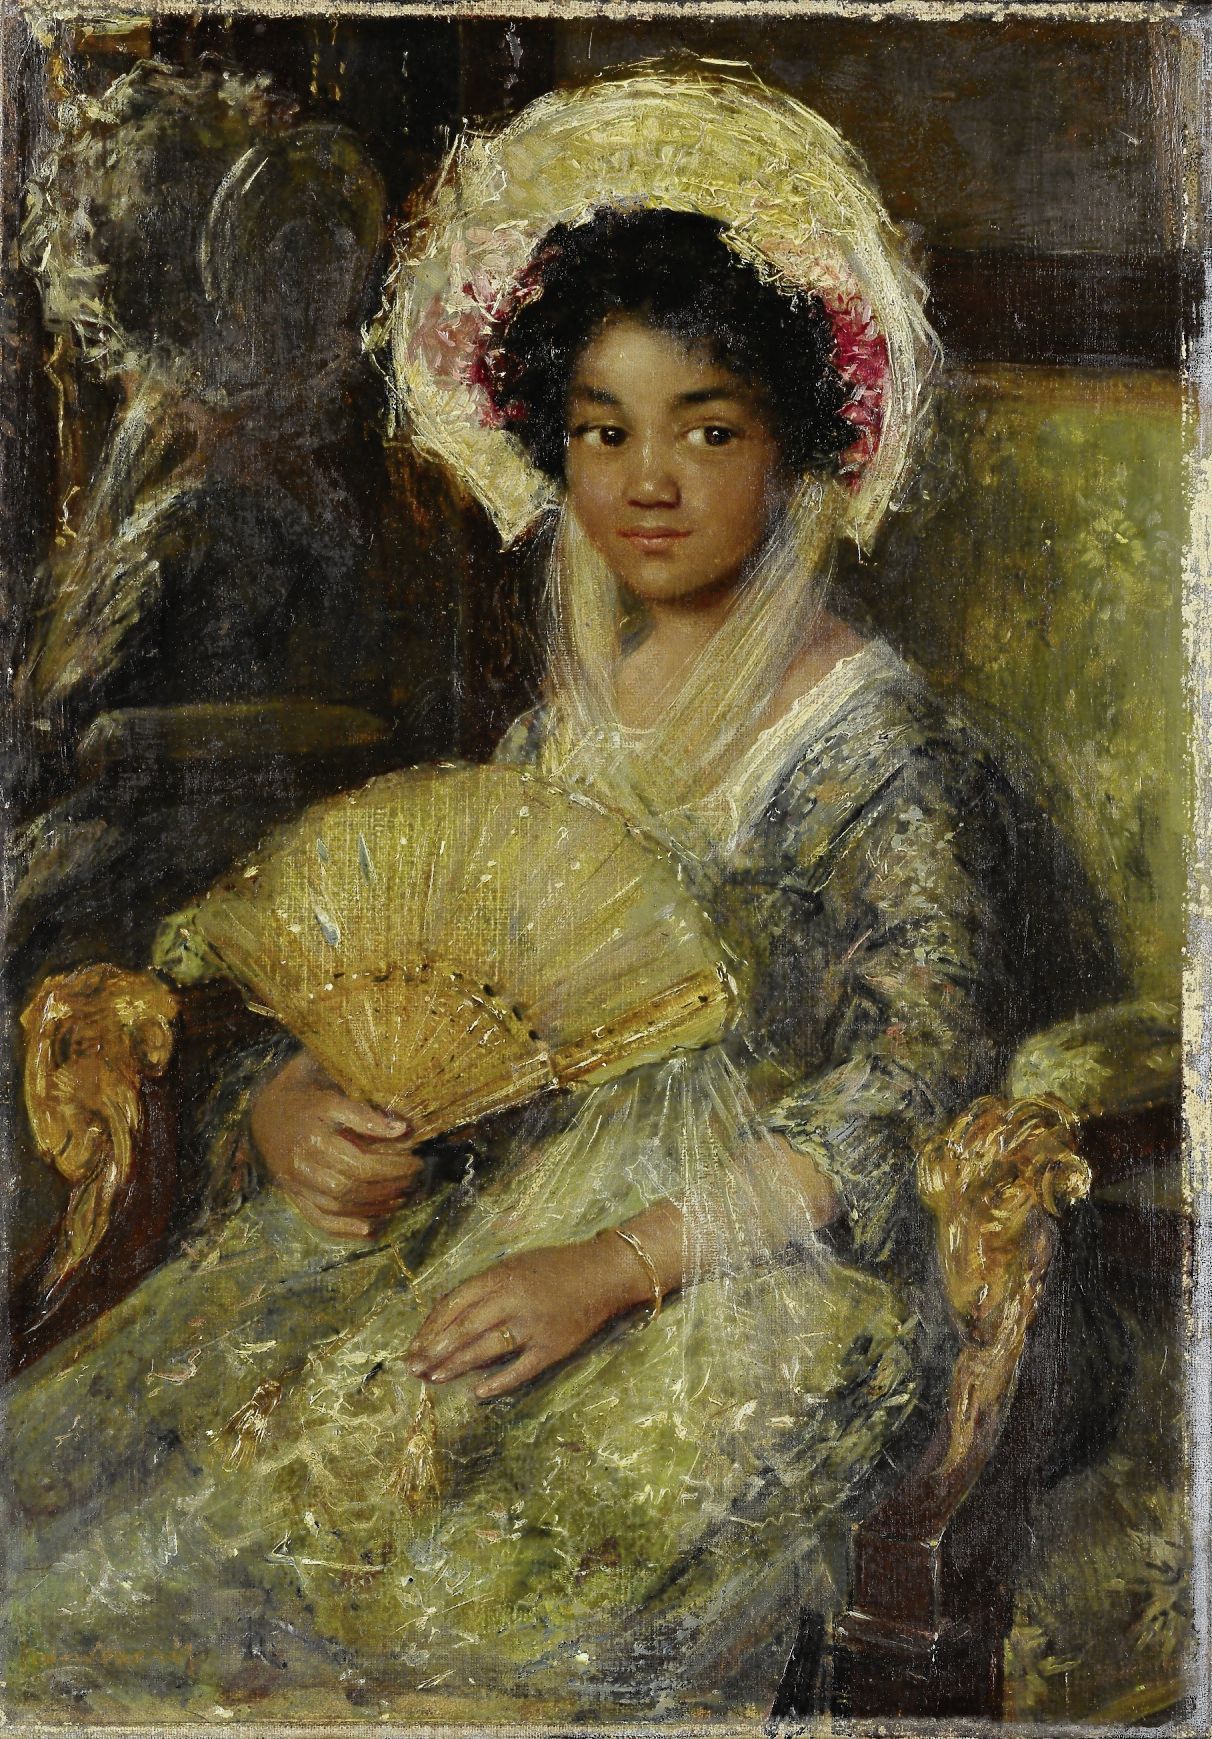 ‘Jonge vrouw met waaier’ van Simon Maris, datering 1895-1922. Voormalige titel: ‘Negerinnetje’. Beschrijving: ‘Een zittende jonge zwarte vrouw, met een kanten hoed op het hoofd en een waaier in de rechterhand.’